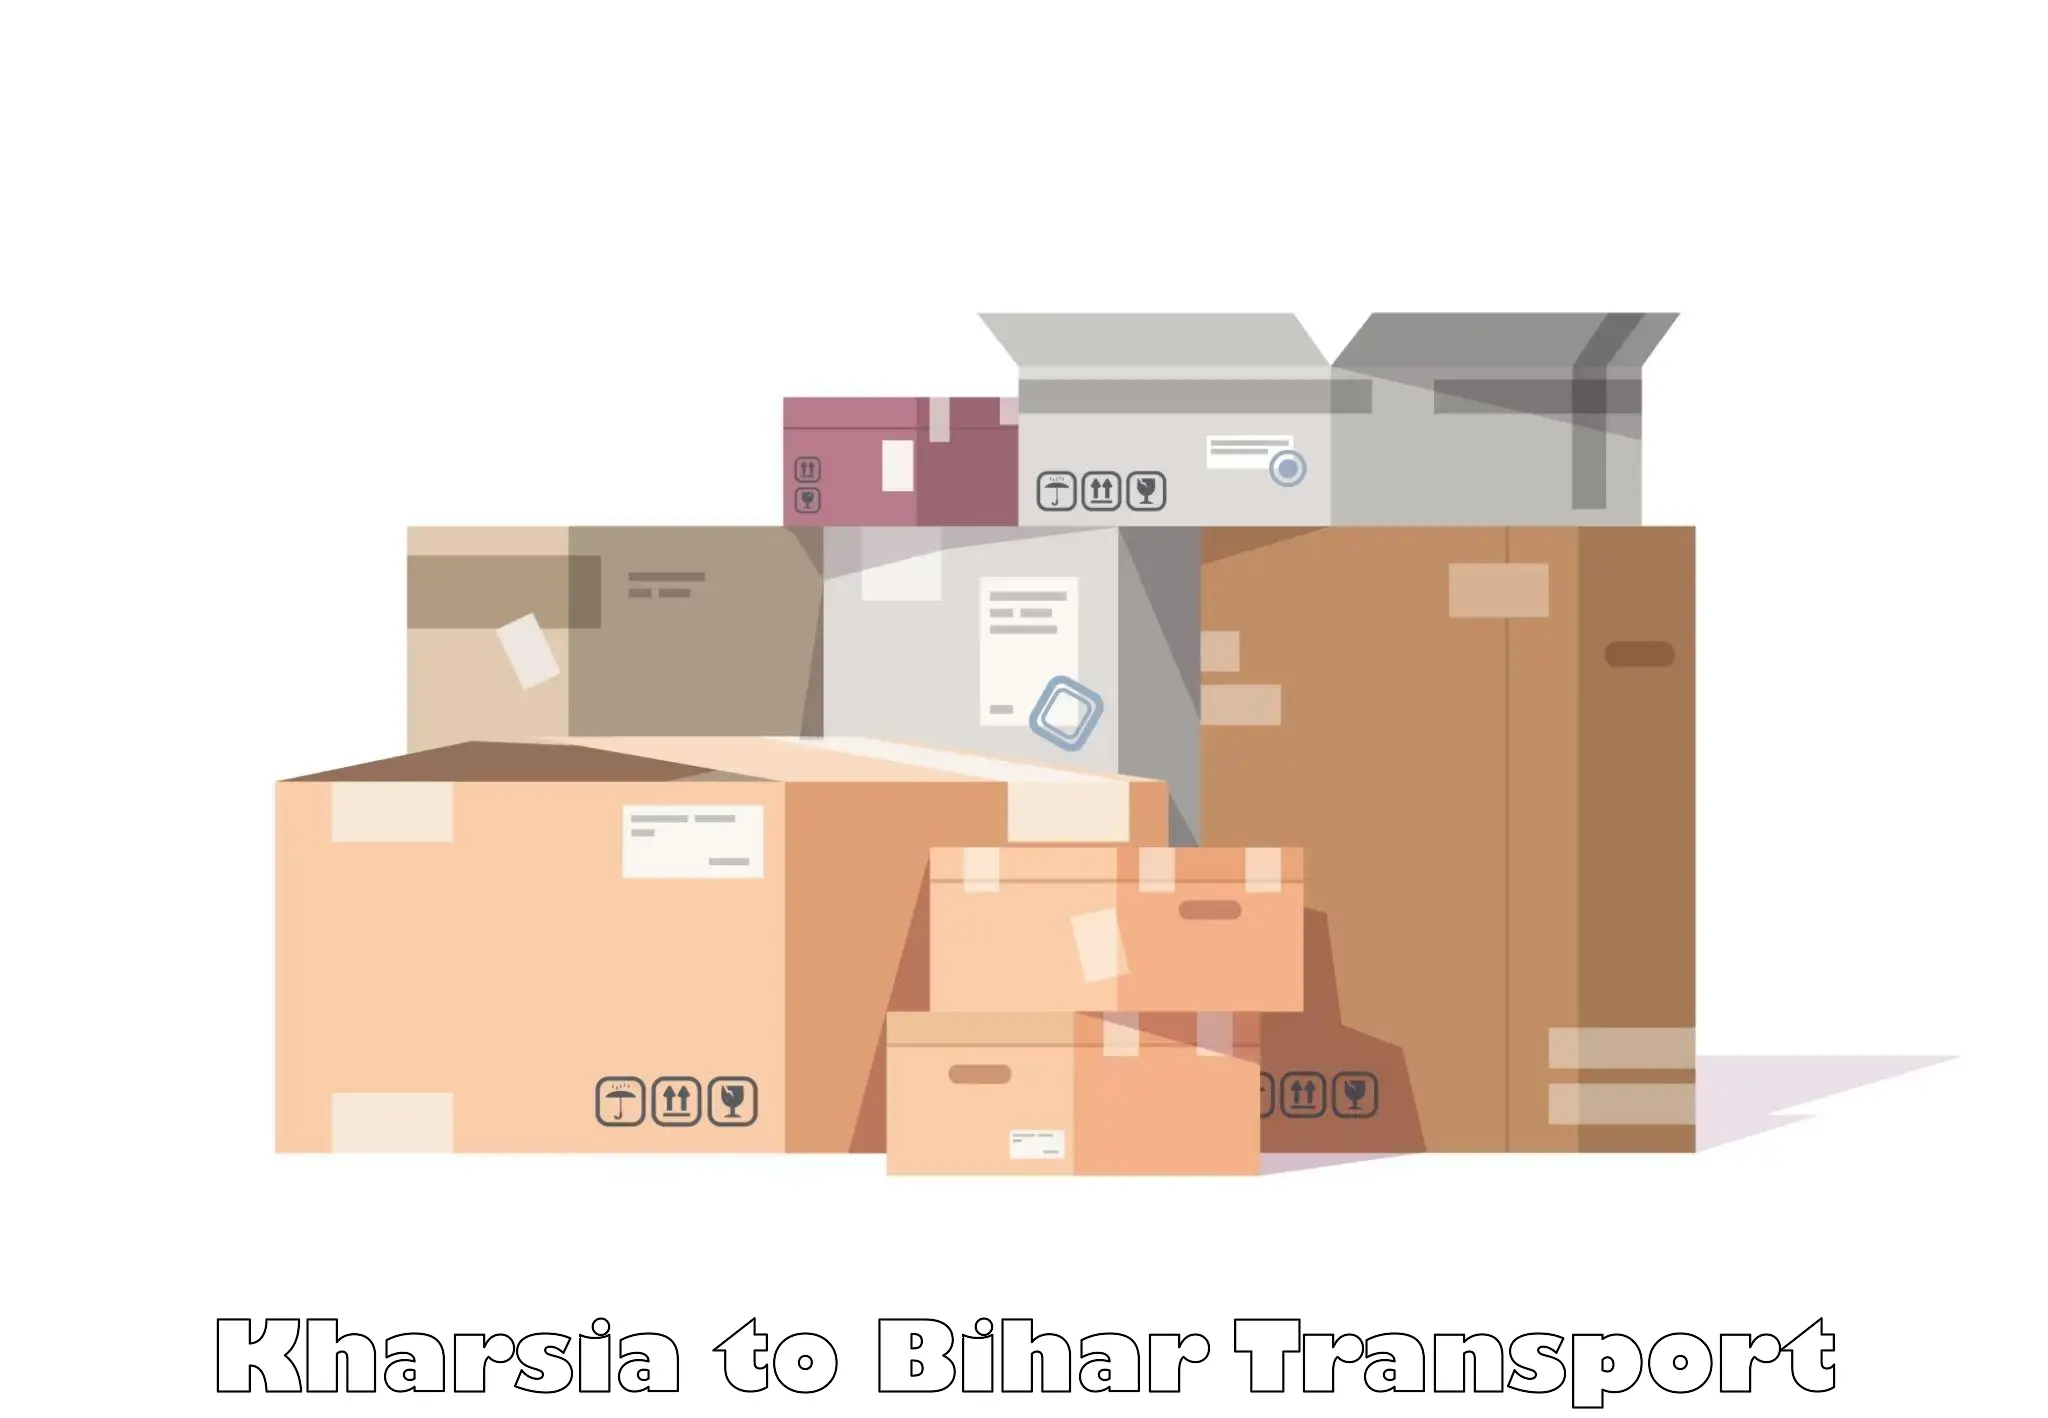 Pick up transport service Kharsia to Narpatganj